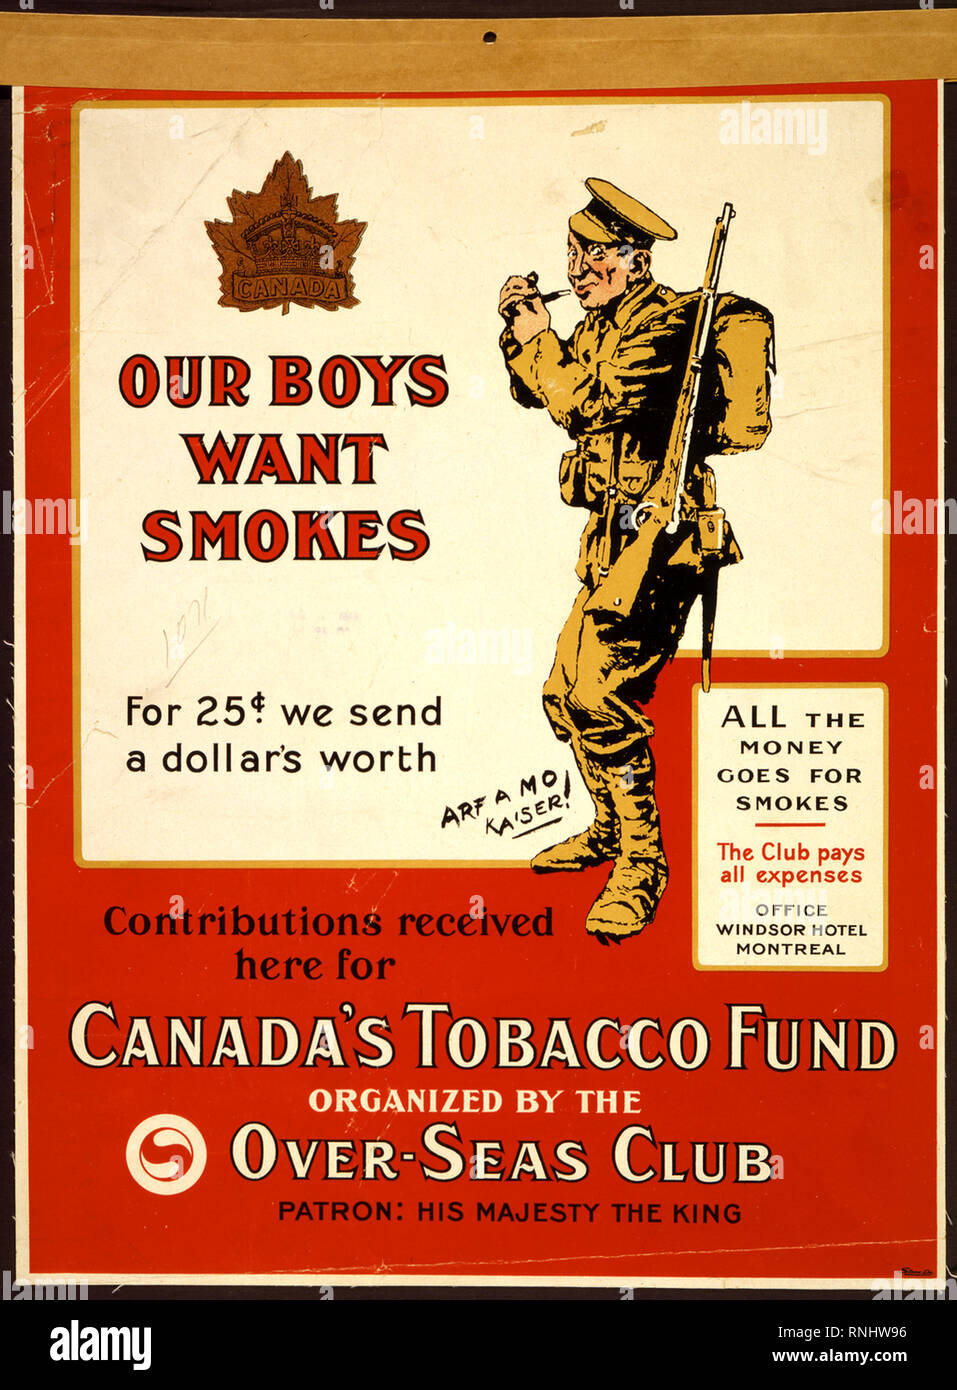 Dieser Welt krieg ich Poster von Kanada bittet um Mittel aus dem öffentlichen Tabakwaren für die Soldaten an der Front in Europa zu kaufen. Es zeigt eine beliebte Karikatur von der Künstler Bert Thomas (1883-1966), in dem ein Soldat ist Beleuchtung seine Pfeife, das Gewehr in der Hand und fordern die deutschen Kaiser zu "Arf ein Mo" (kurz warten). Der Text sagt: "Unsere Jungen wollen raucht. Für 25 cent Wir senden einen Dollar wert. Beiträge hier erhalten für Kanadas Tabakfonds, organisiert von der Over-Seas Club." "Seine Majestät der König" als Schirmherr der Club aufgeführt ist, und der Text versichert, dass "All das Geld geht für s Stockfoto